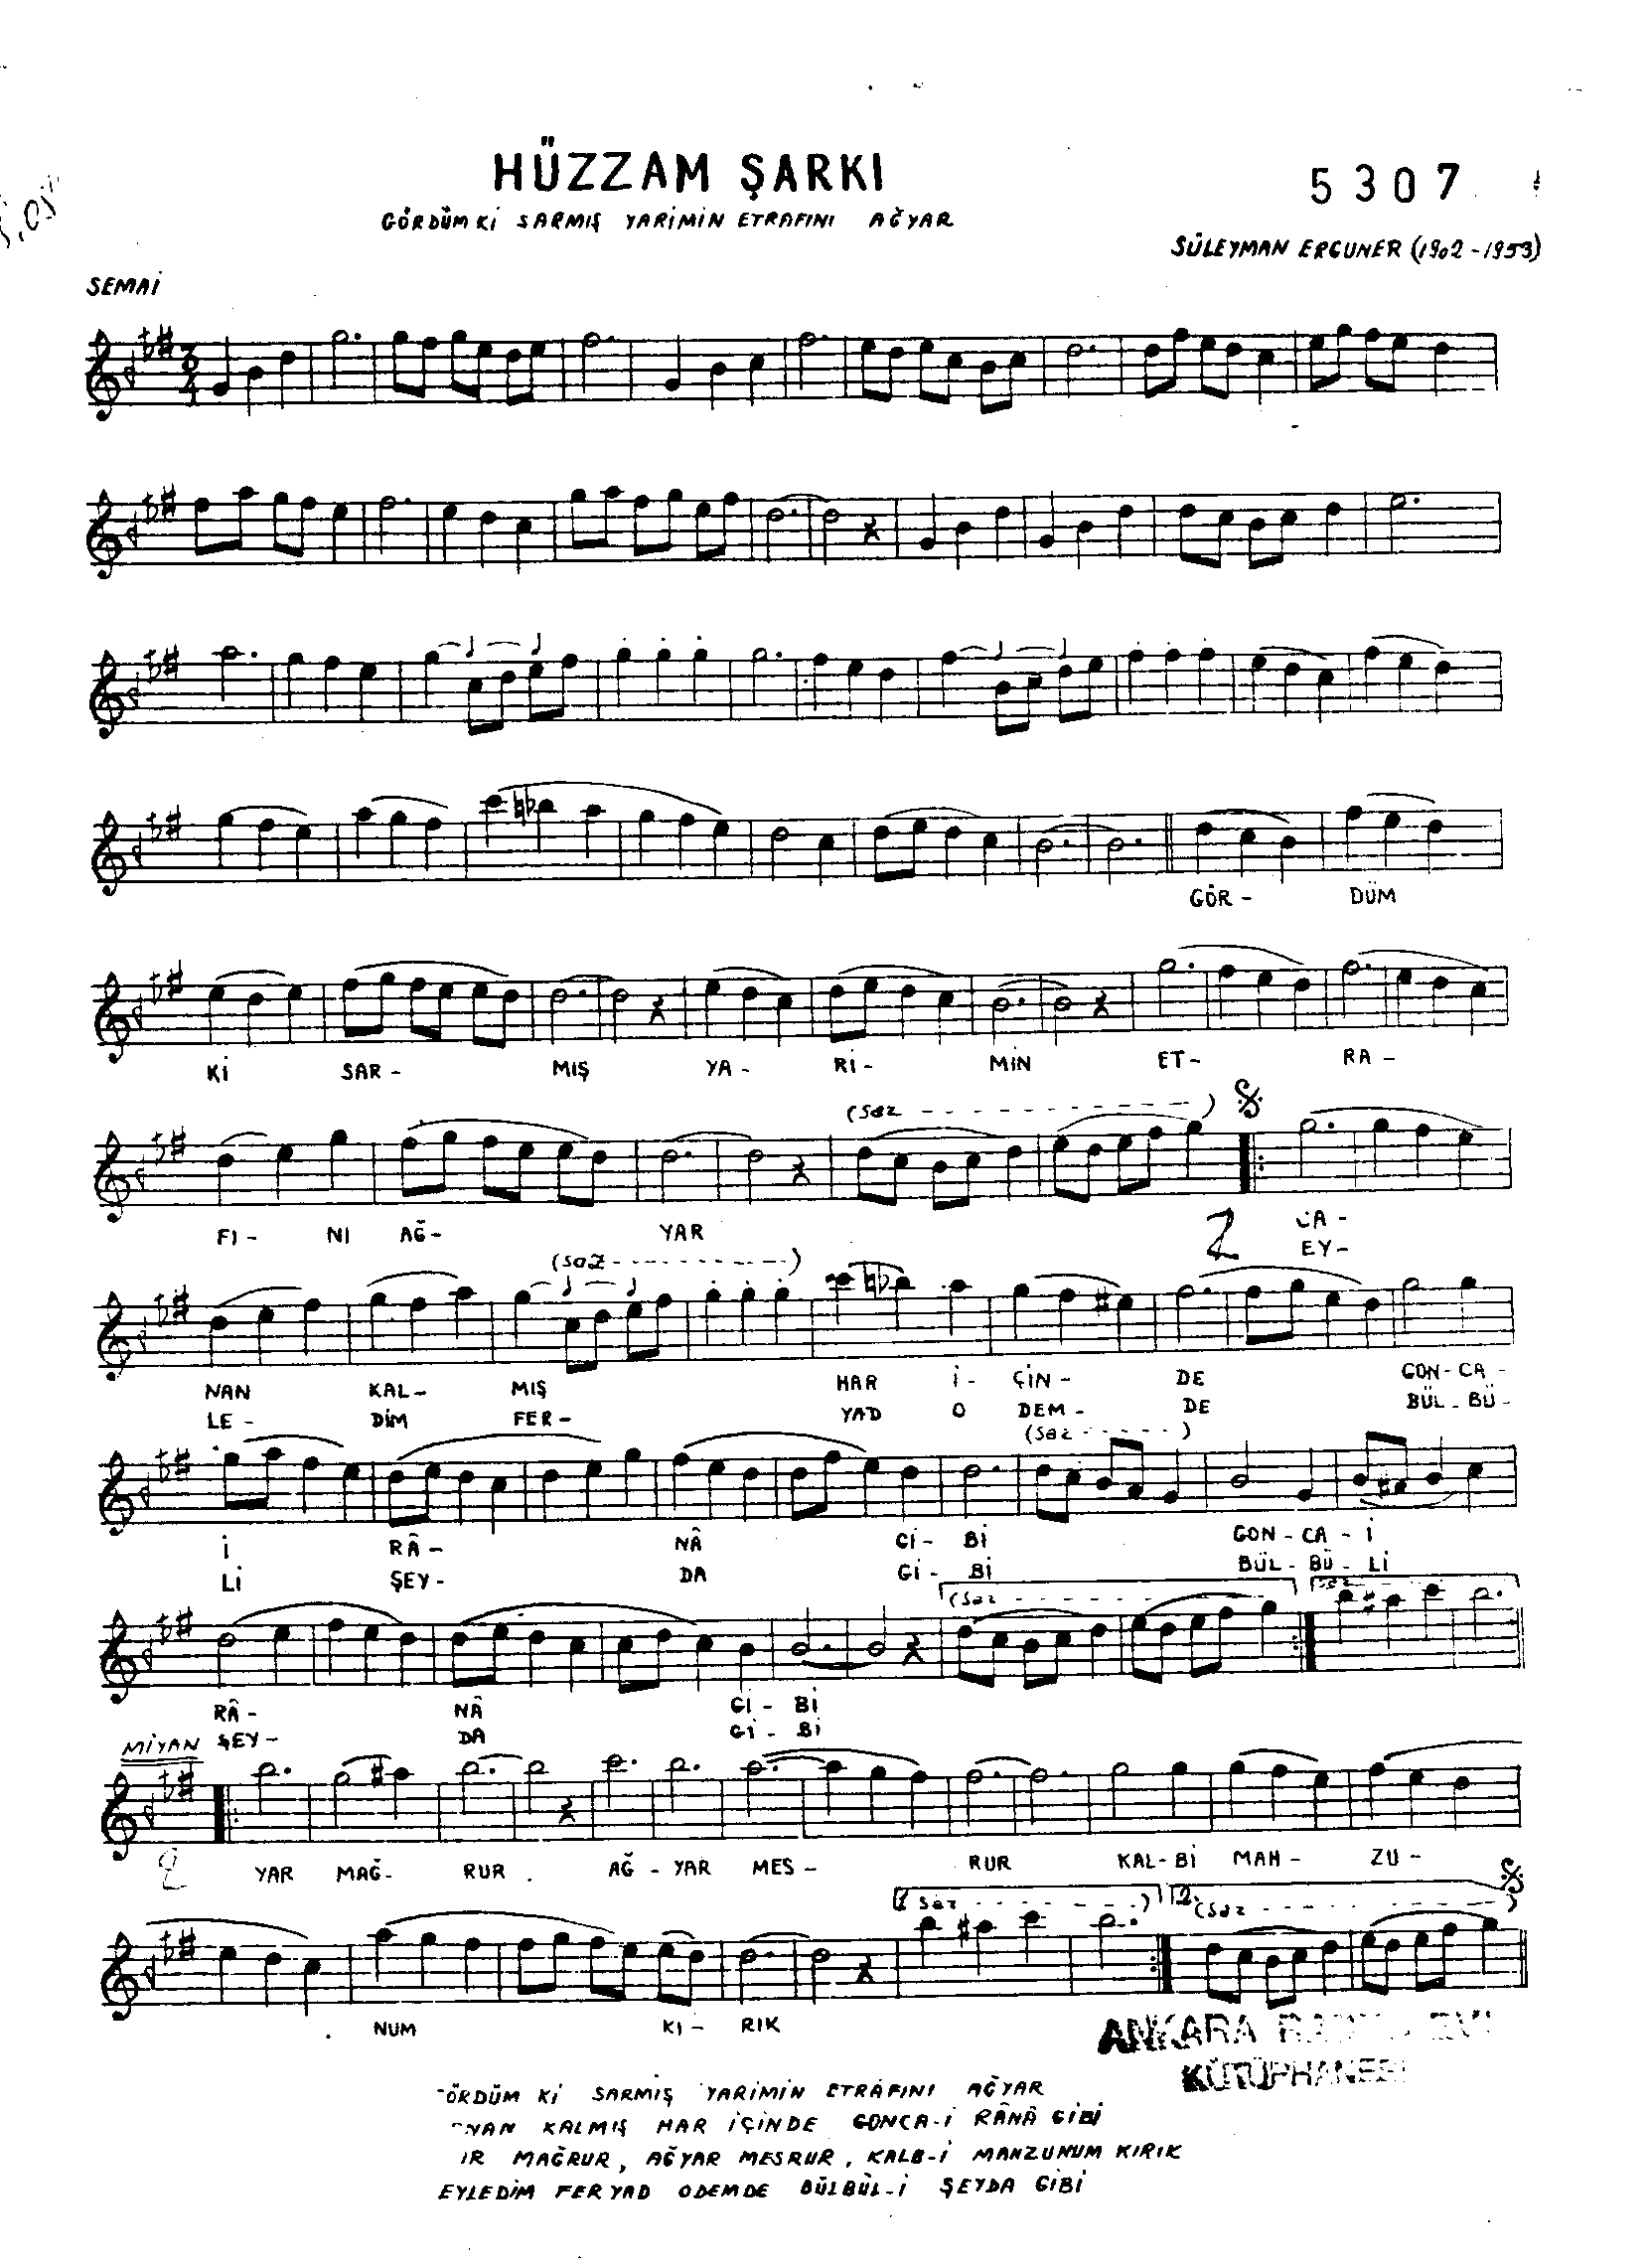 Hüzzâm - Şarkı - Süleyman Erguner - Sayfa 1